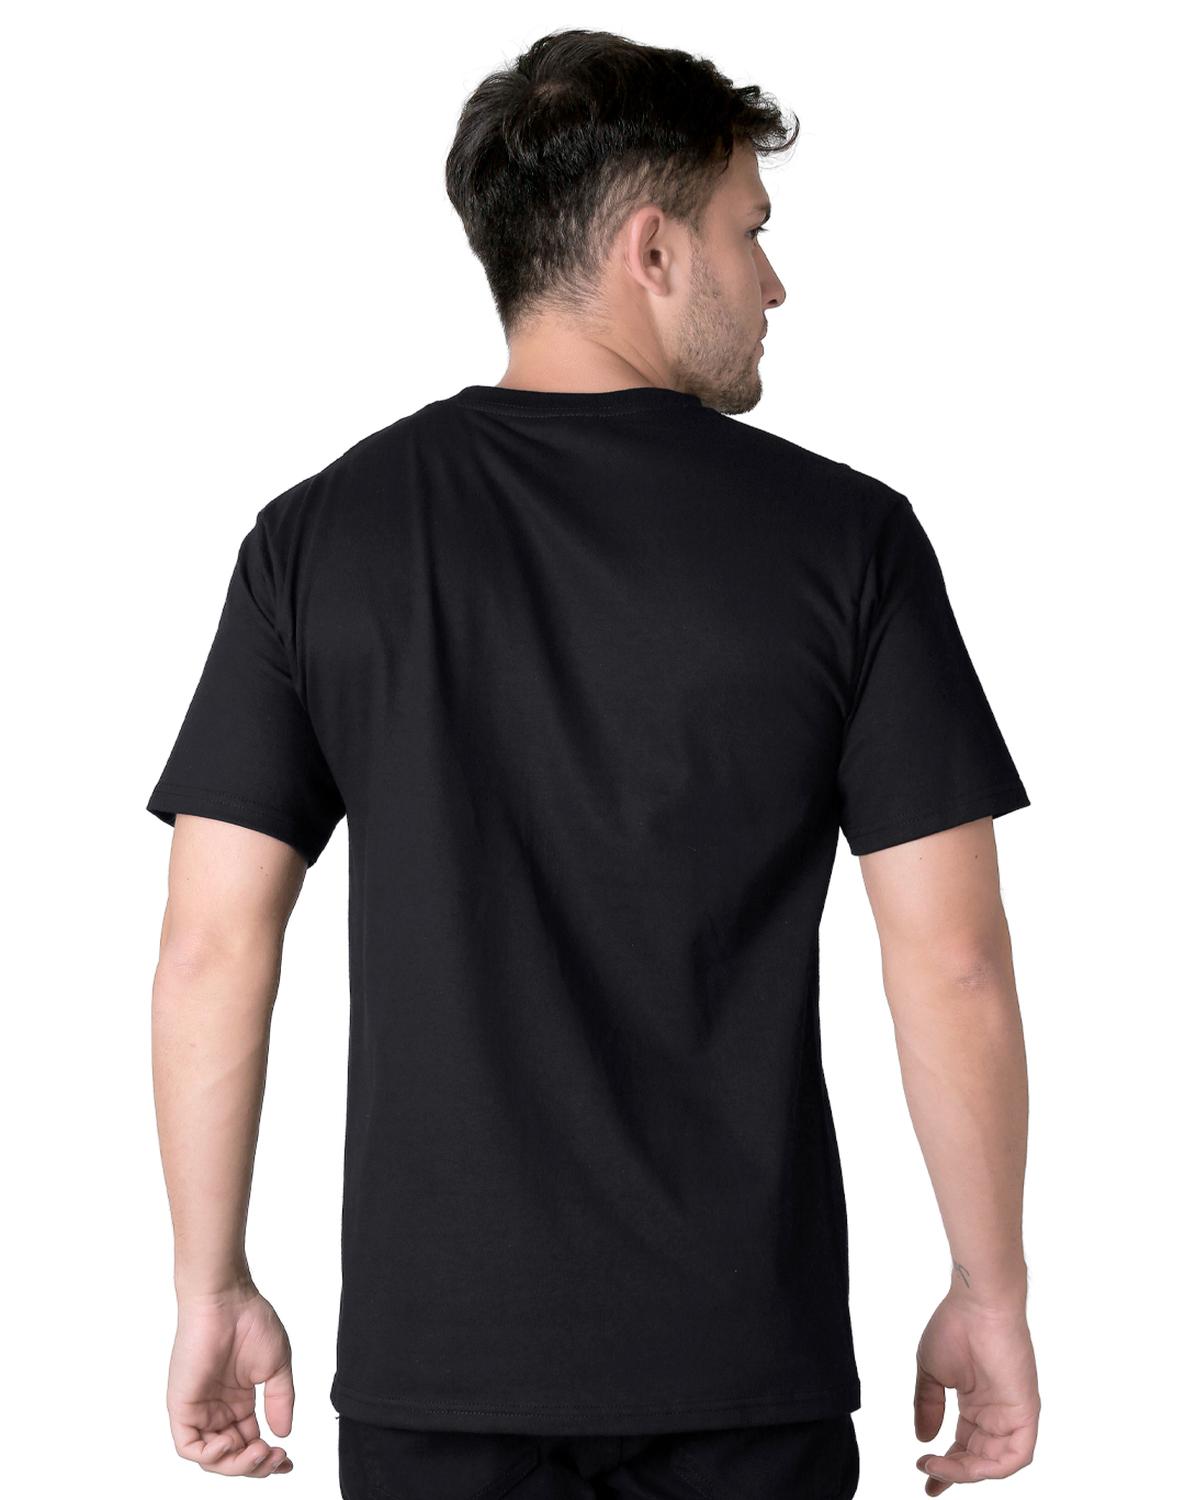 Playera Moda Camiseta Hombre Negro Toxic 51604613